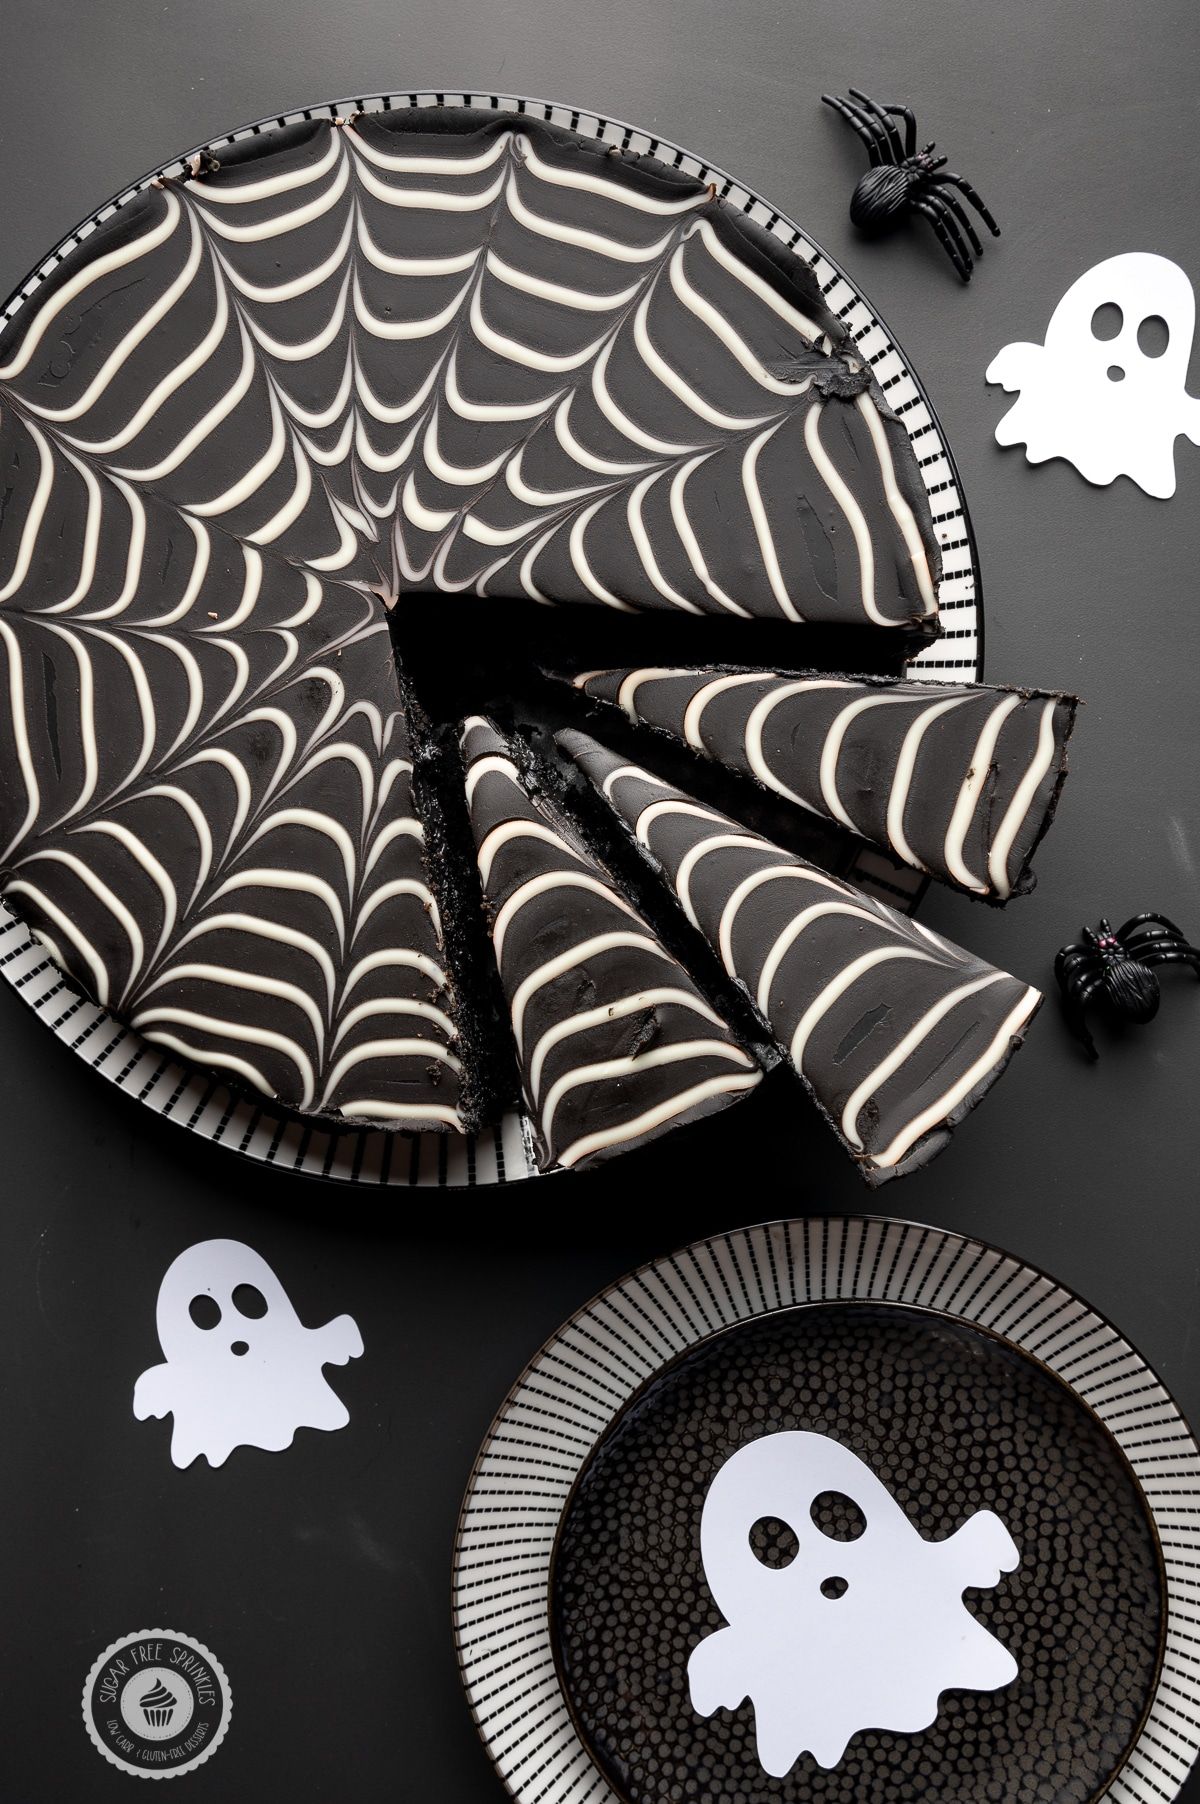 25 Weird, Creepy, Spooky and Scary Halloween Cakes - Spicytec | Halloween  cakes, Scary cakes, Scary halloween cakes